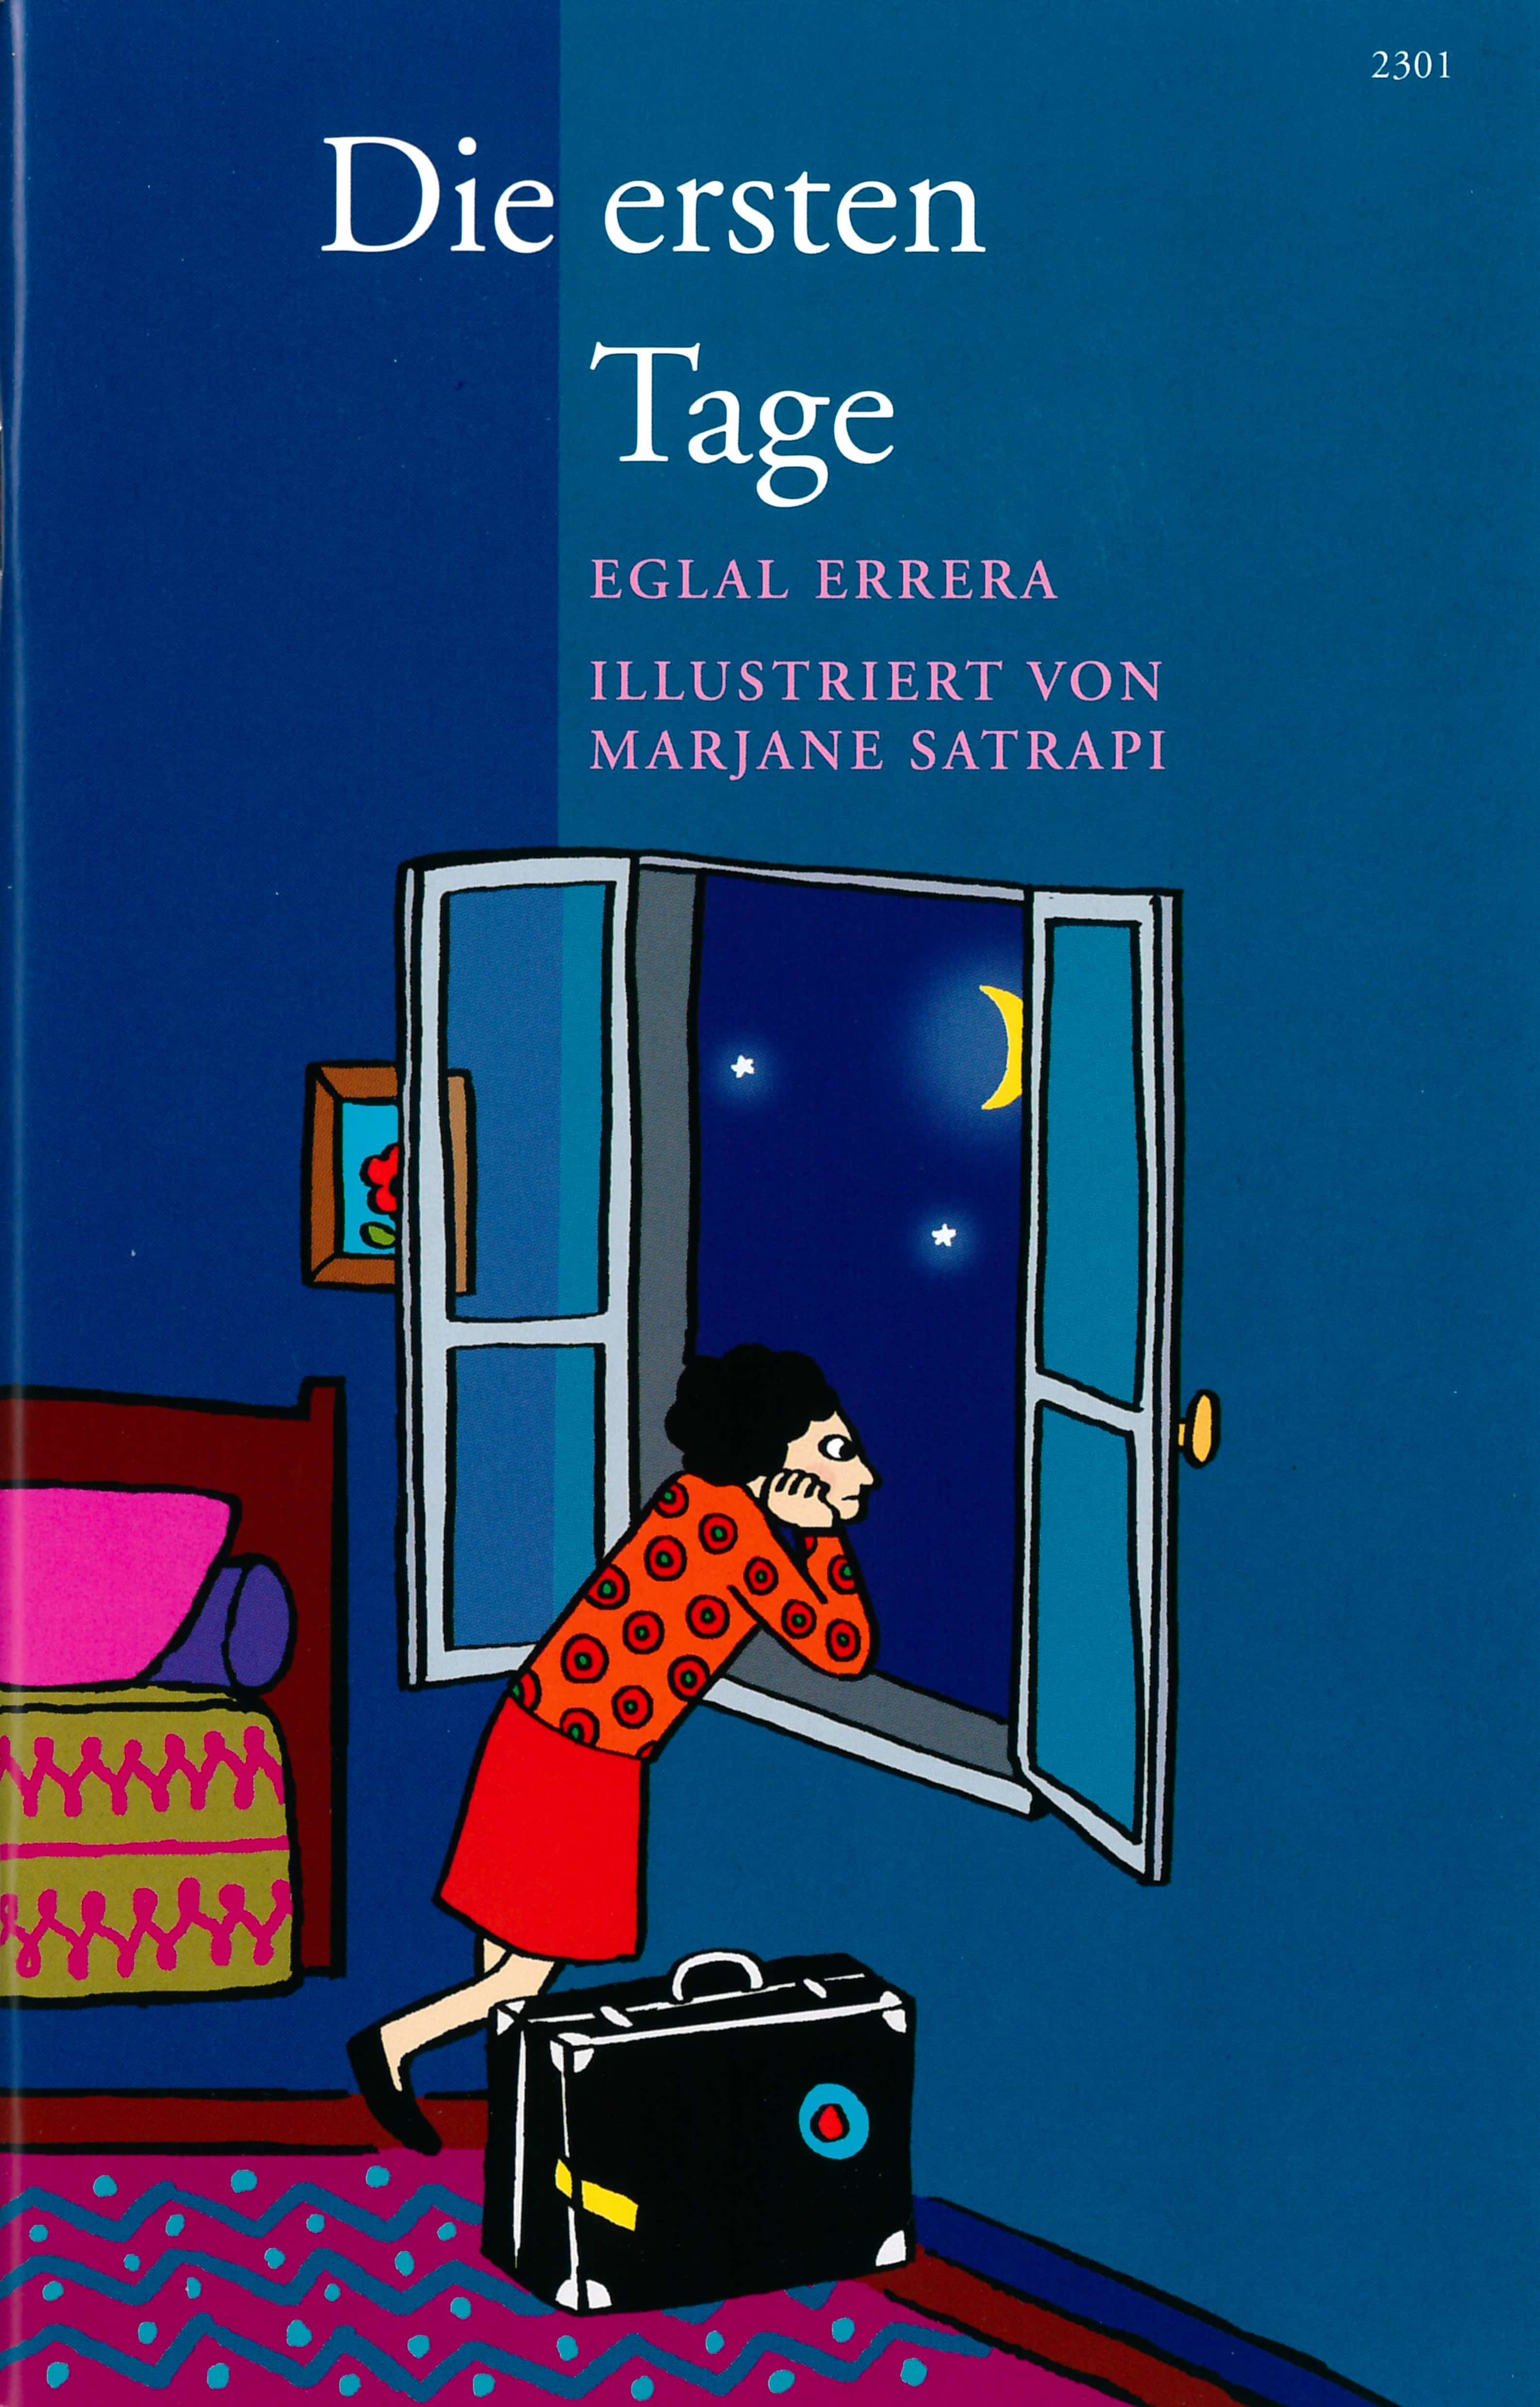 Die ersten Tage, ein Kinderbuch von Eglal Errera, Illustration von Marjane Satrapi, SJW Verlag, Migration